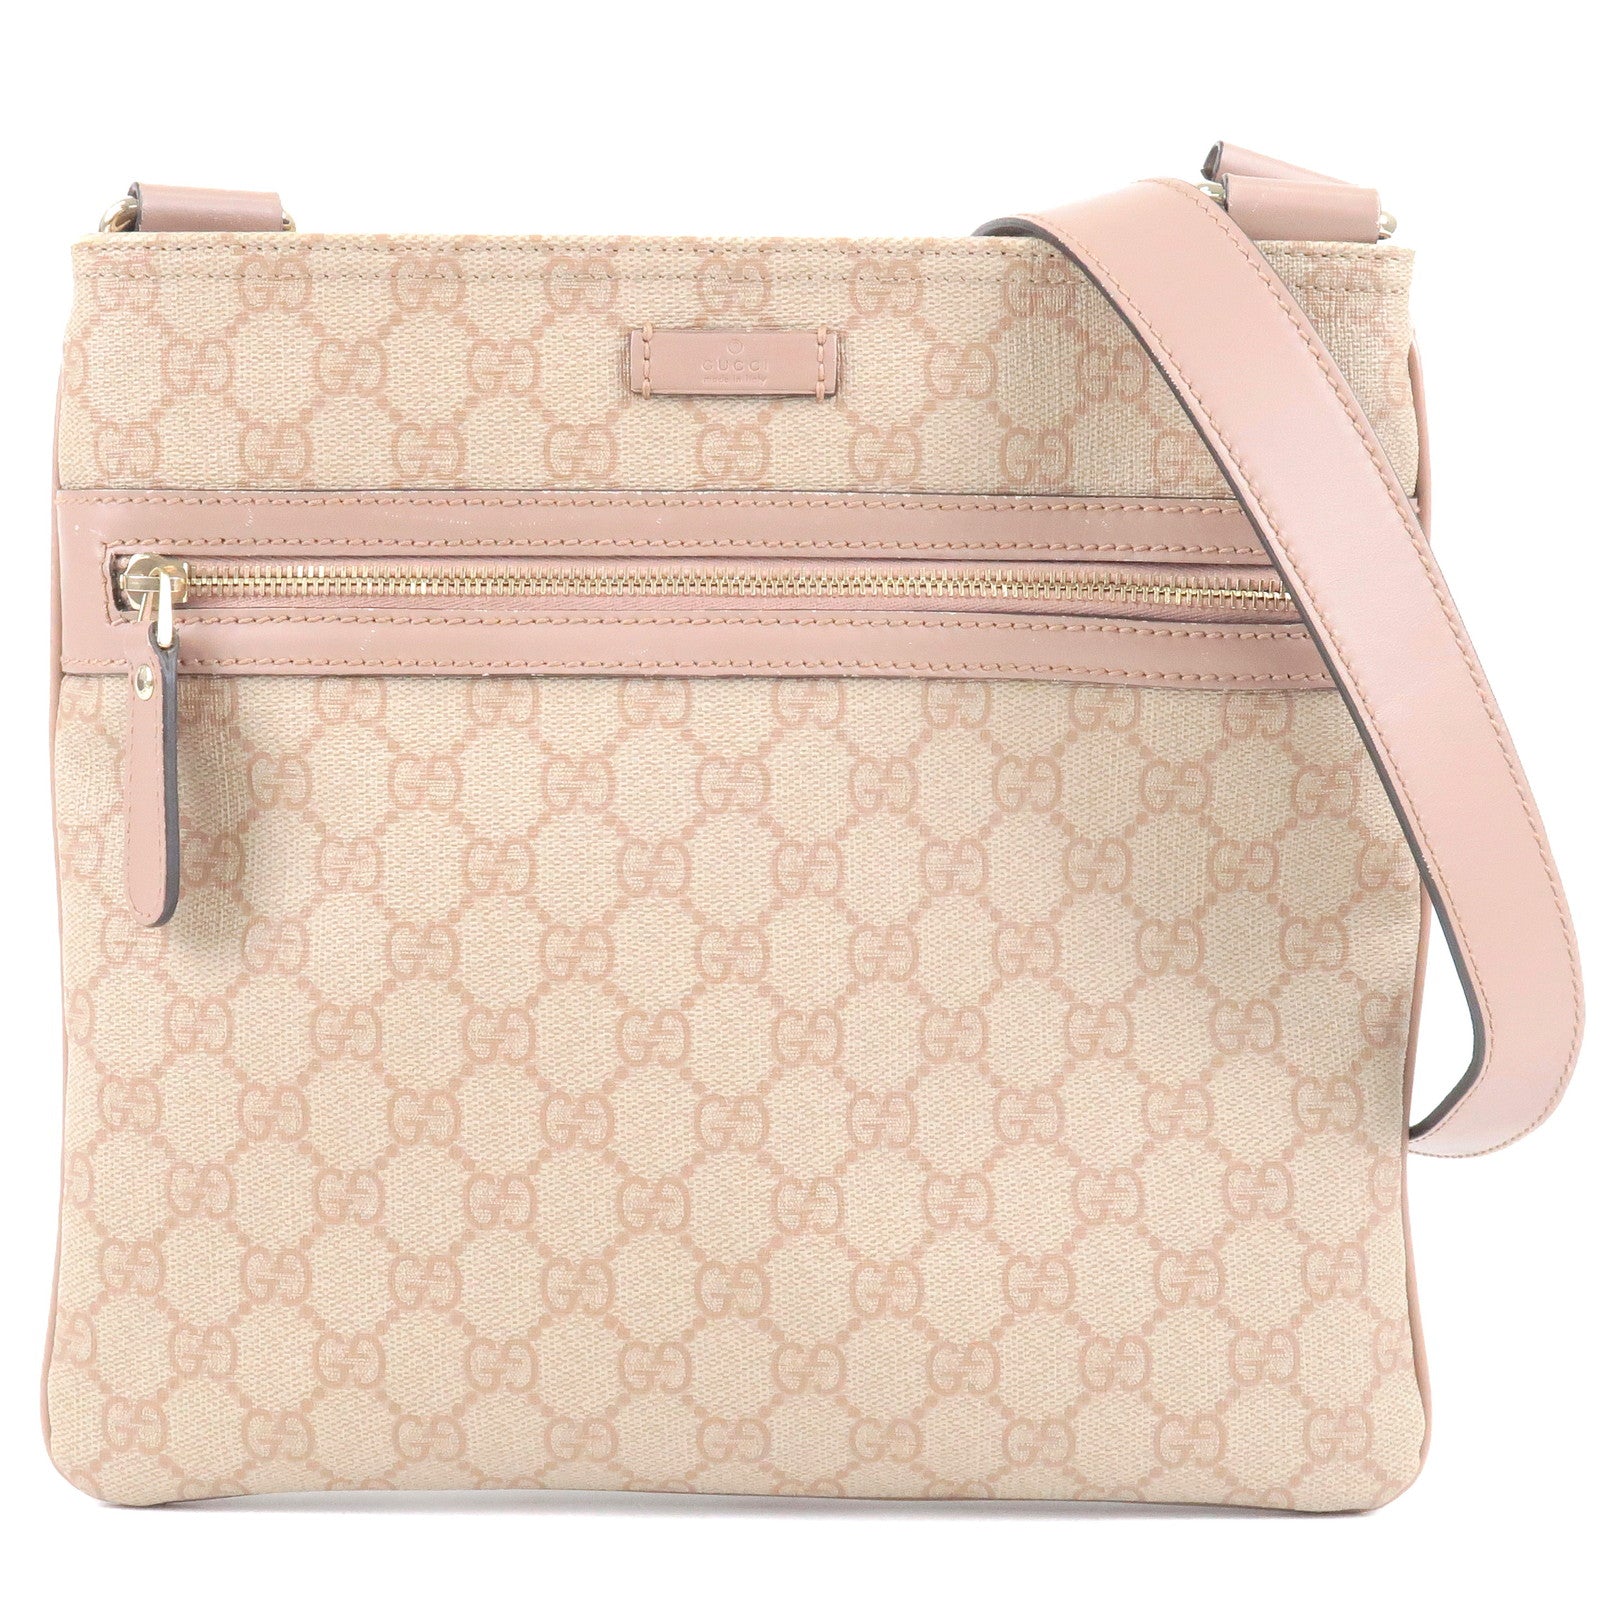 GUCCI-GG-Supreme-Leather-Shoulder-Bag-Purse-Pink-Beige-295257